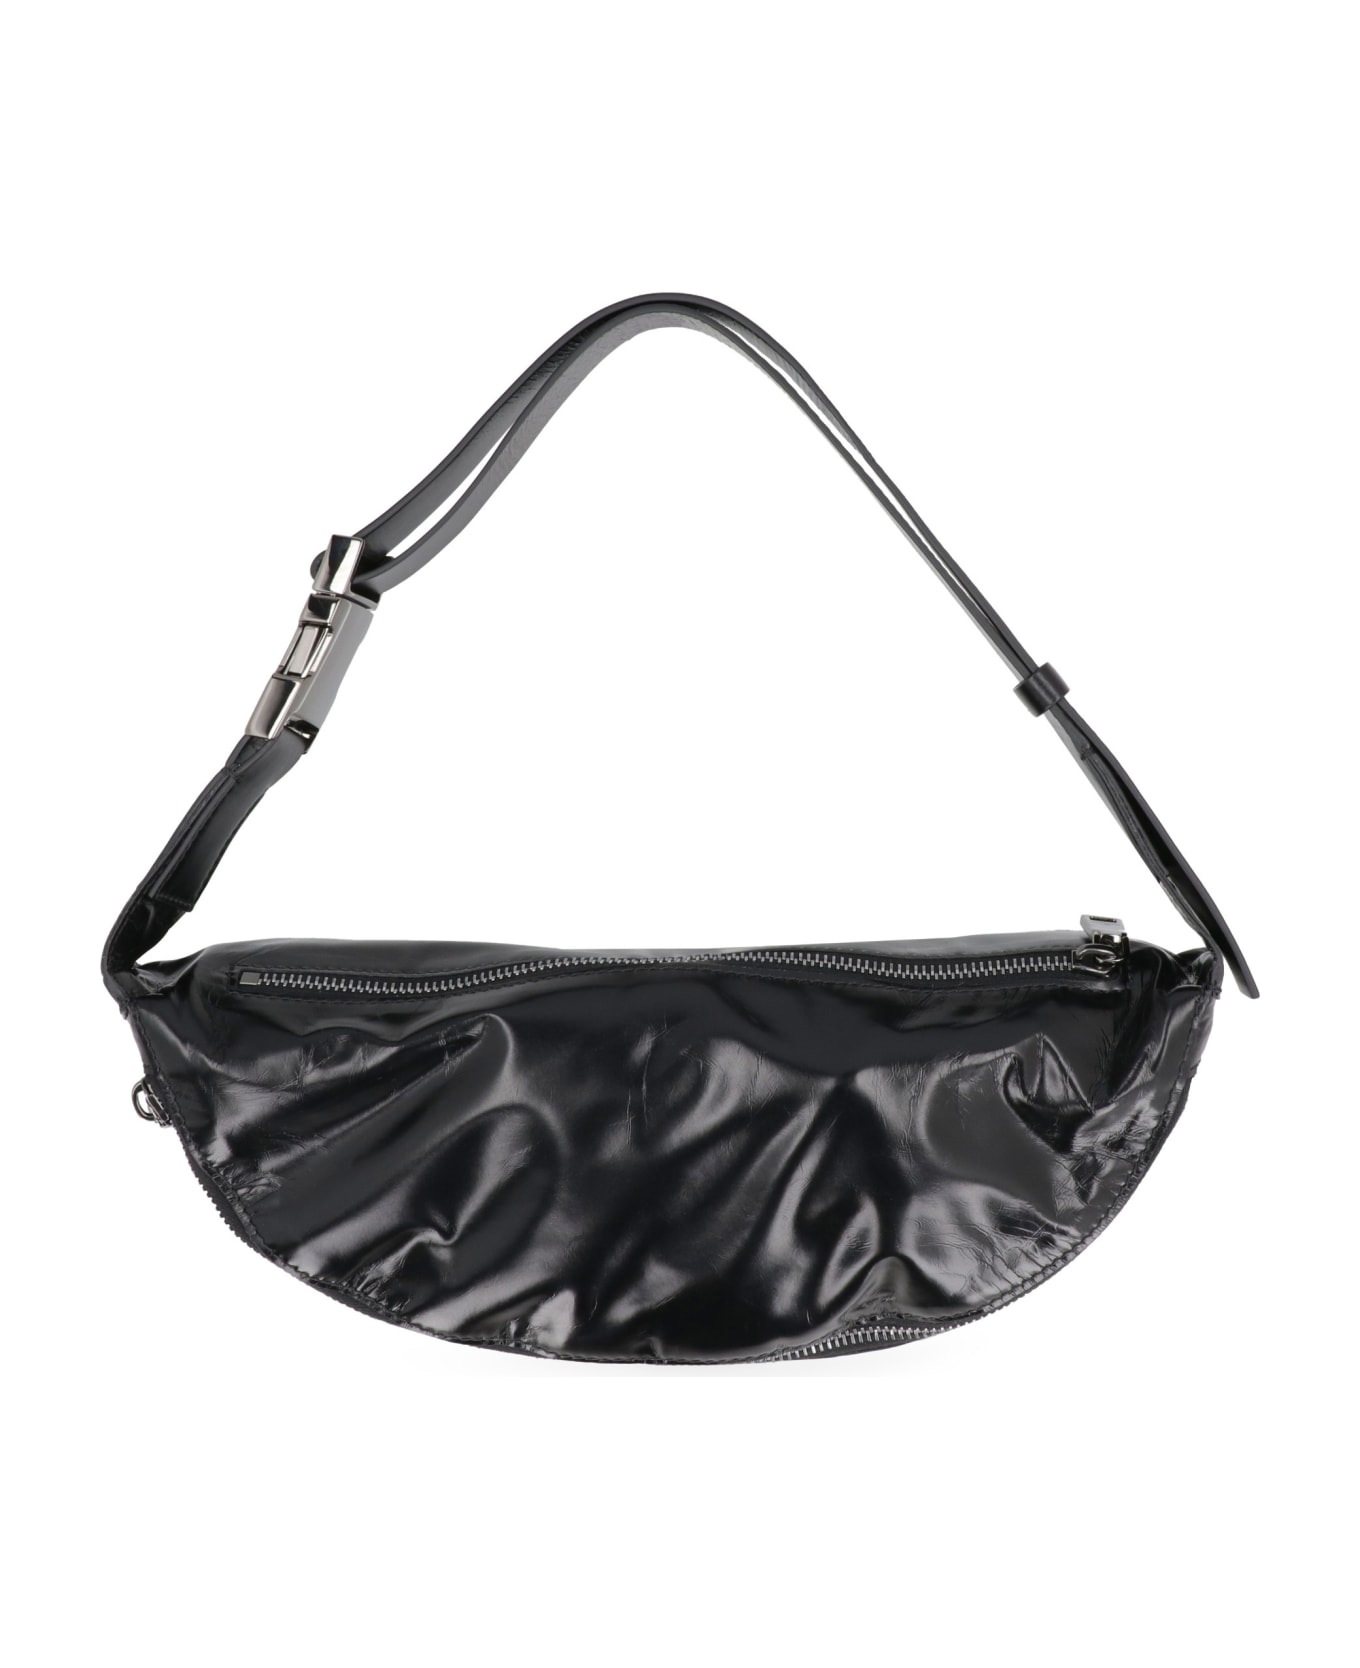 Valentino Garavani - Vltn Soft Leather Belt Bag - black ベルトバッグ